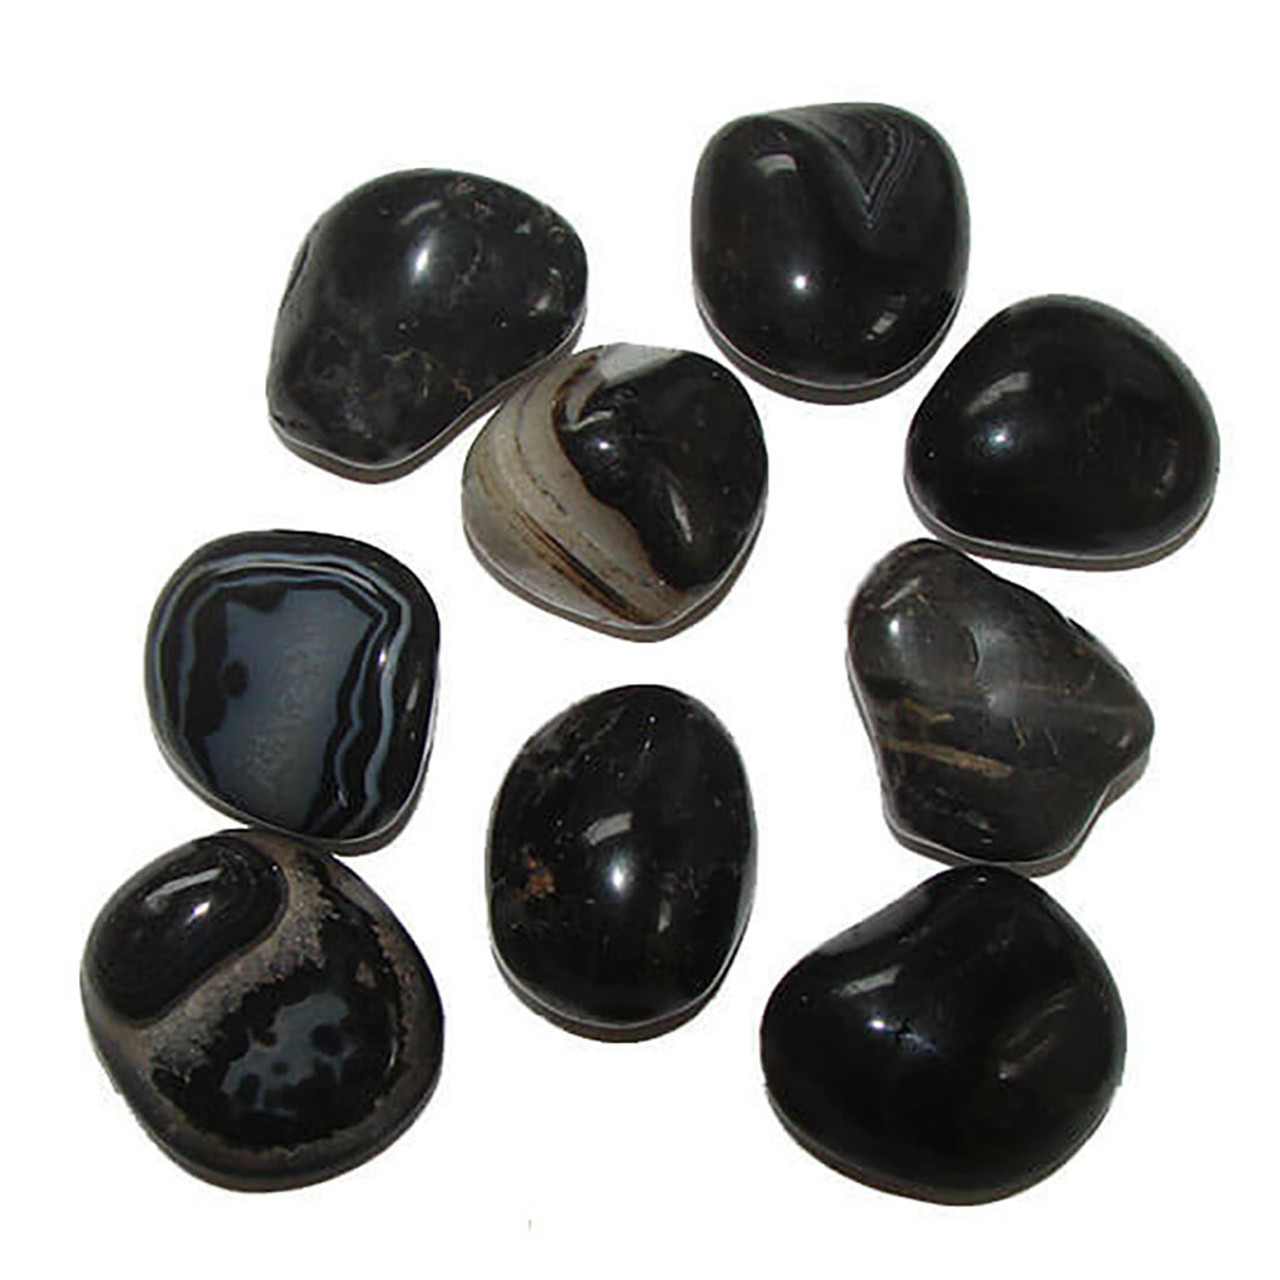 Tumbled Black Onyx - Black Onyx Tumbled Stone